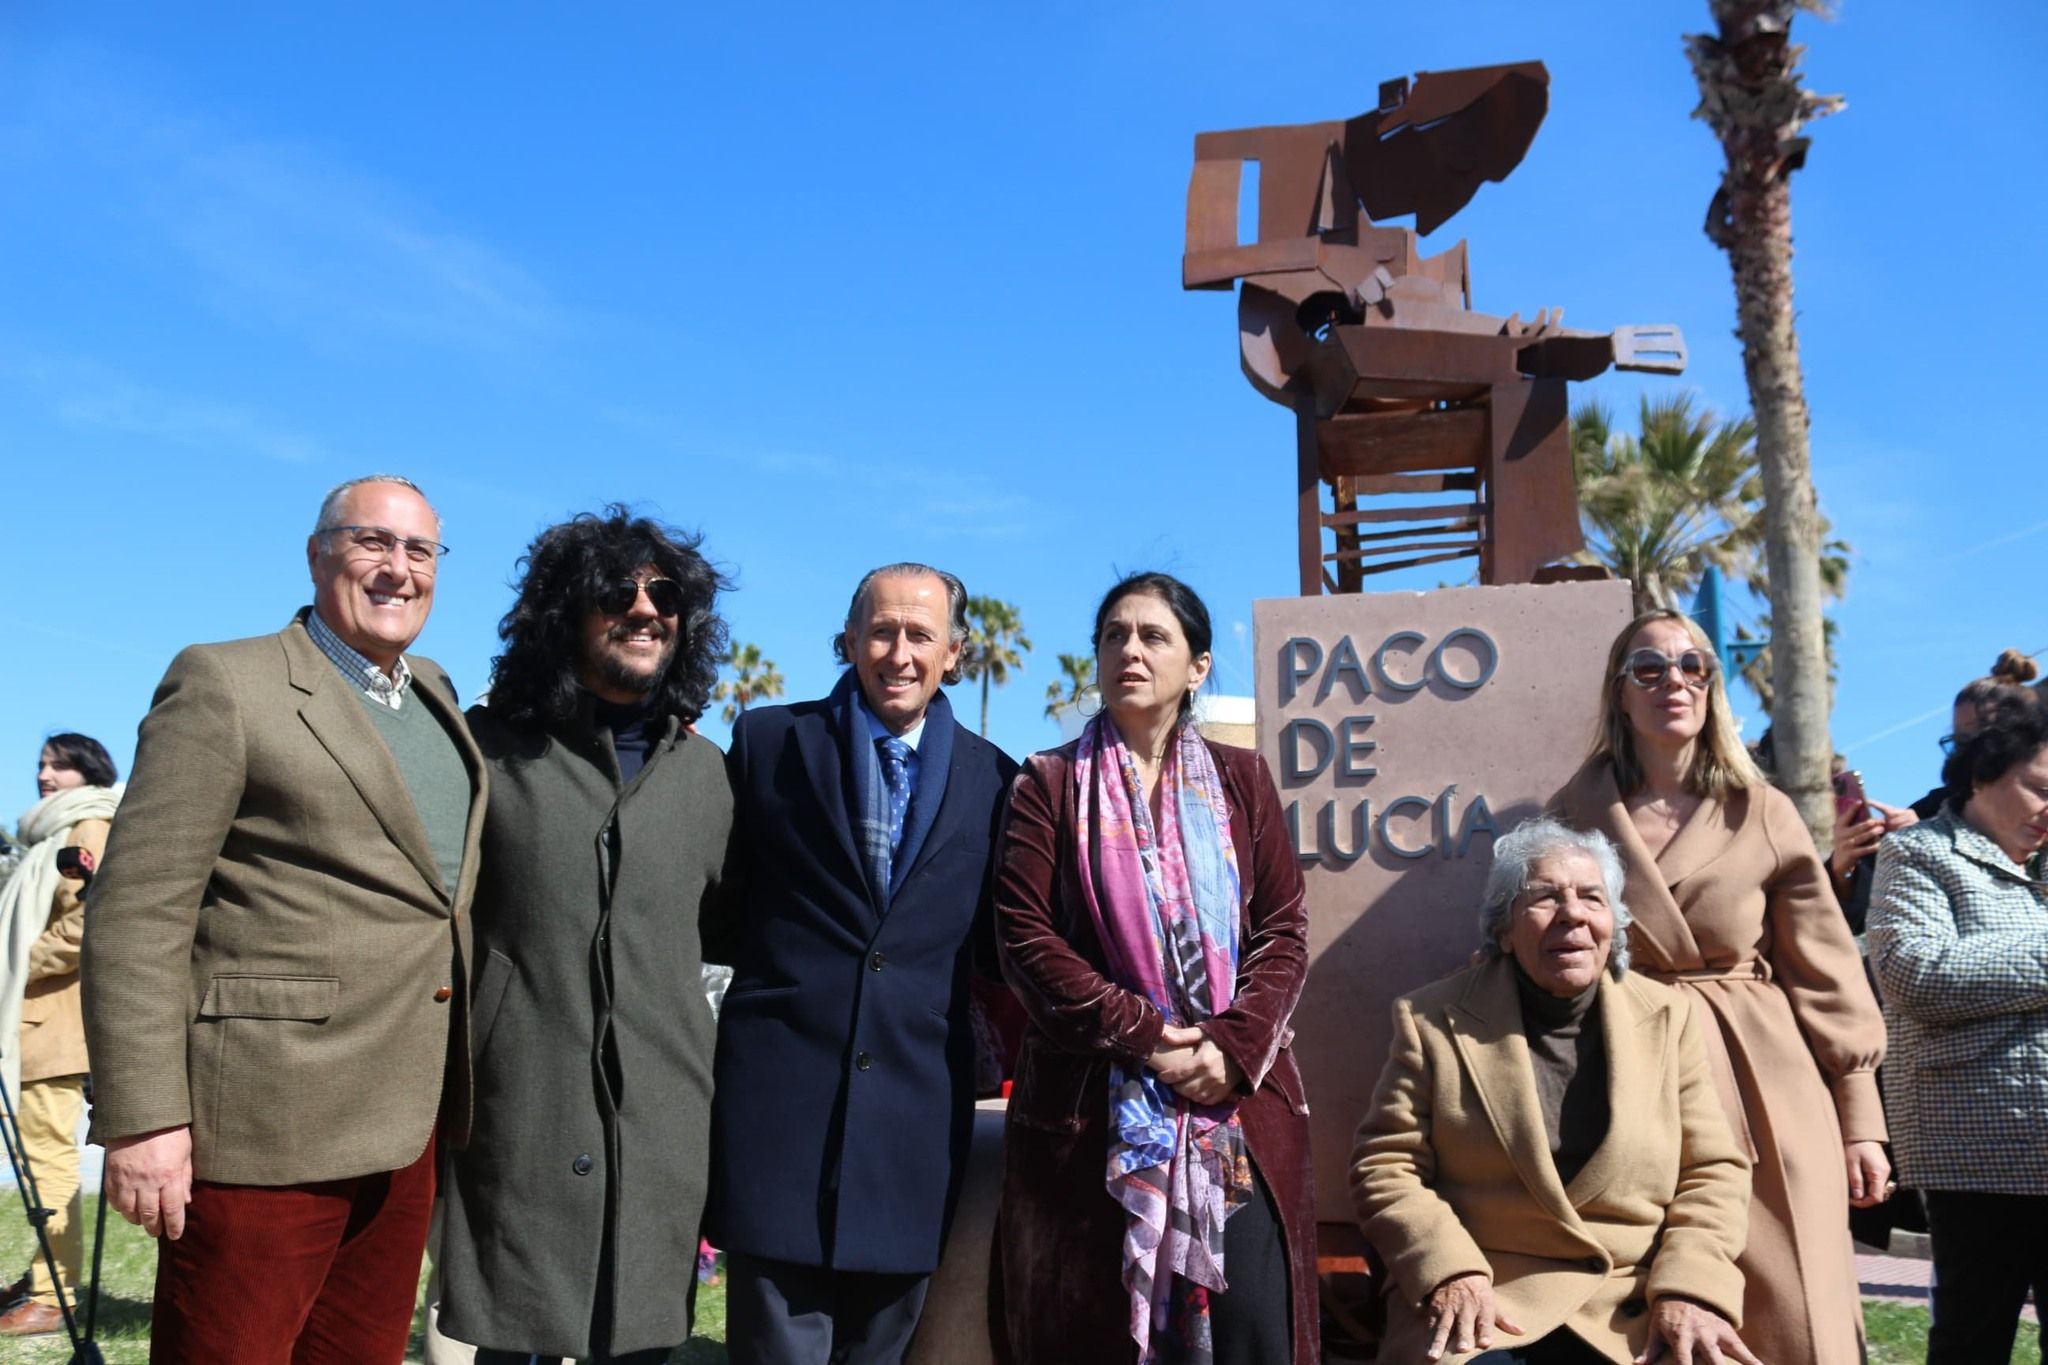 La escultura en Chiclana a Paco de Lucía, junto a los familiares de Rancapino, que también está ya en el Bulevar de la Música.